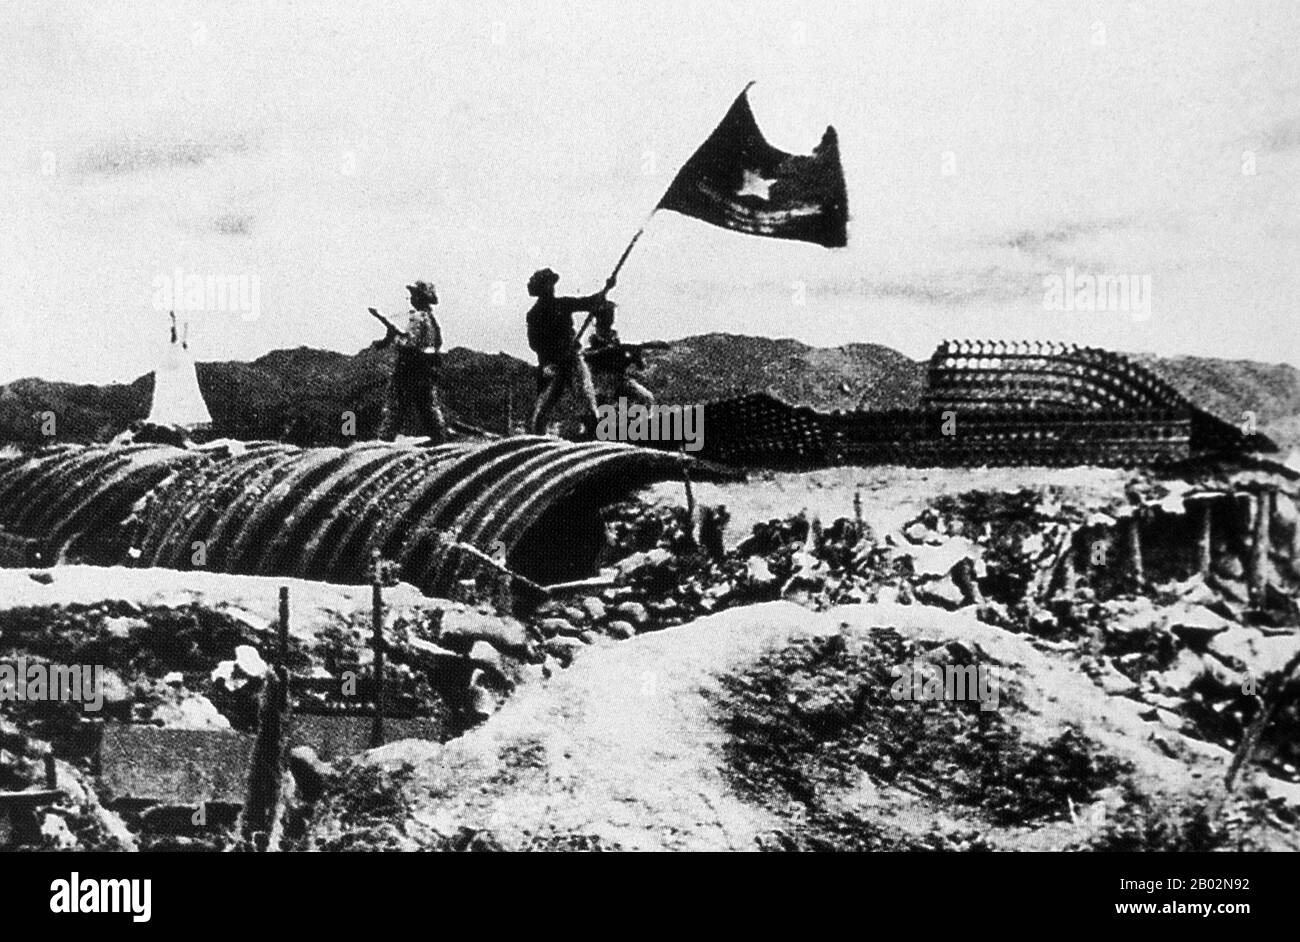 Die wichtige Schlacht von Dien Bien Phu wurde zwischen dem Việt Minh (unter Leitung von General Vo Nguyen Giap) und der französischen Union (unter der Führung von General Henri Navarra, Nachfolger von General Raoul Salan) ausgetragen. Die Belagerung der französischen Garnisonen dauerte siebenundfünfzig Tage, von 17:30 Uhr am 13. März bis 17:30 Uhr am 7. Mai 1954. Isabelle, die südländische Außenstelle oder Brandbasis des Lagers, folgte der Waffenstillstandsordnung nicht und kämpfte bis zum nächsten Tag um 01:00 Uhr; wenige Stunden vor der lang geplanten Konferenz von Genf in Indochina, an der die Vereinigten Staaten, das Vereinigte Königreich, die französische Union und die Sowjetunion beteiligt waren. Stockfoto